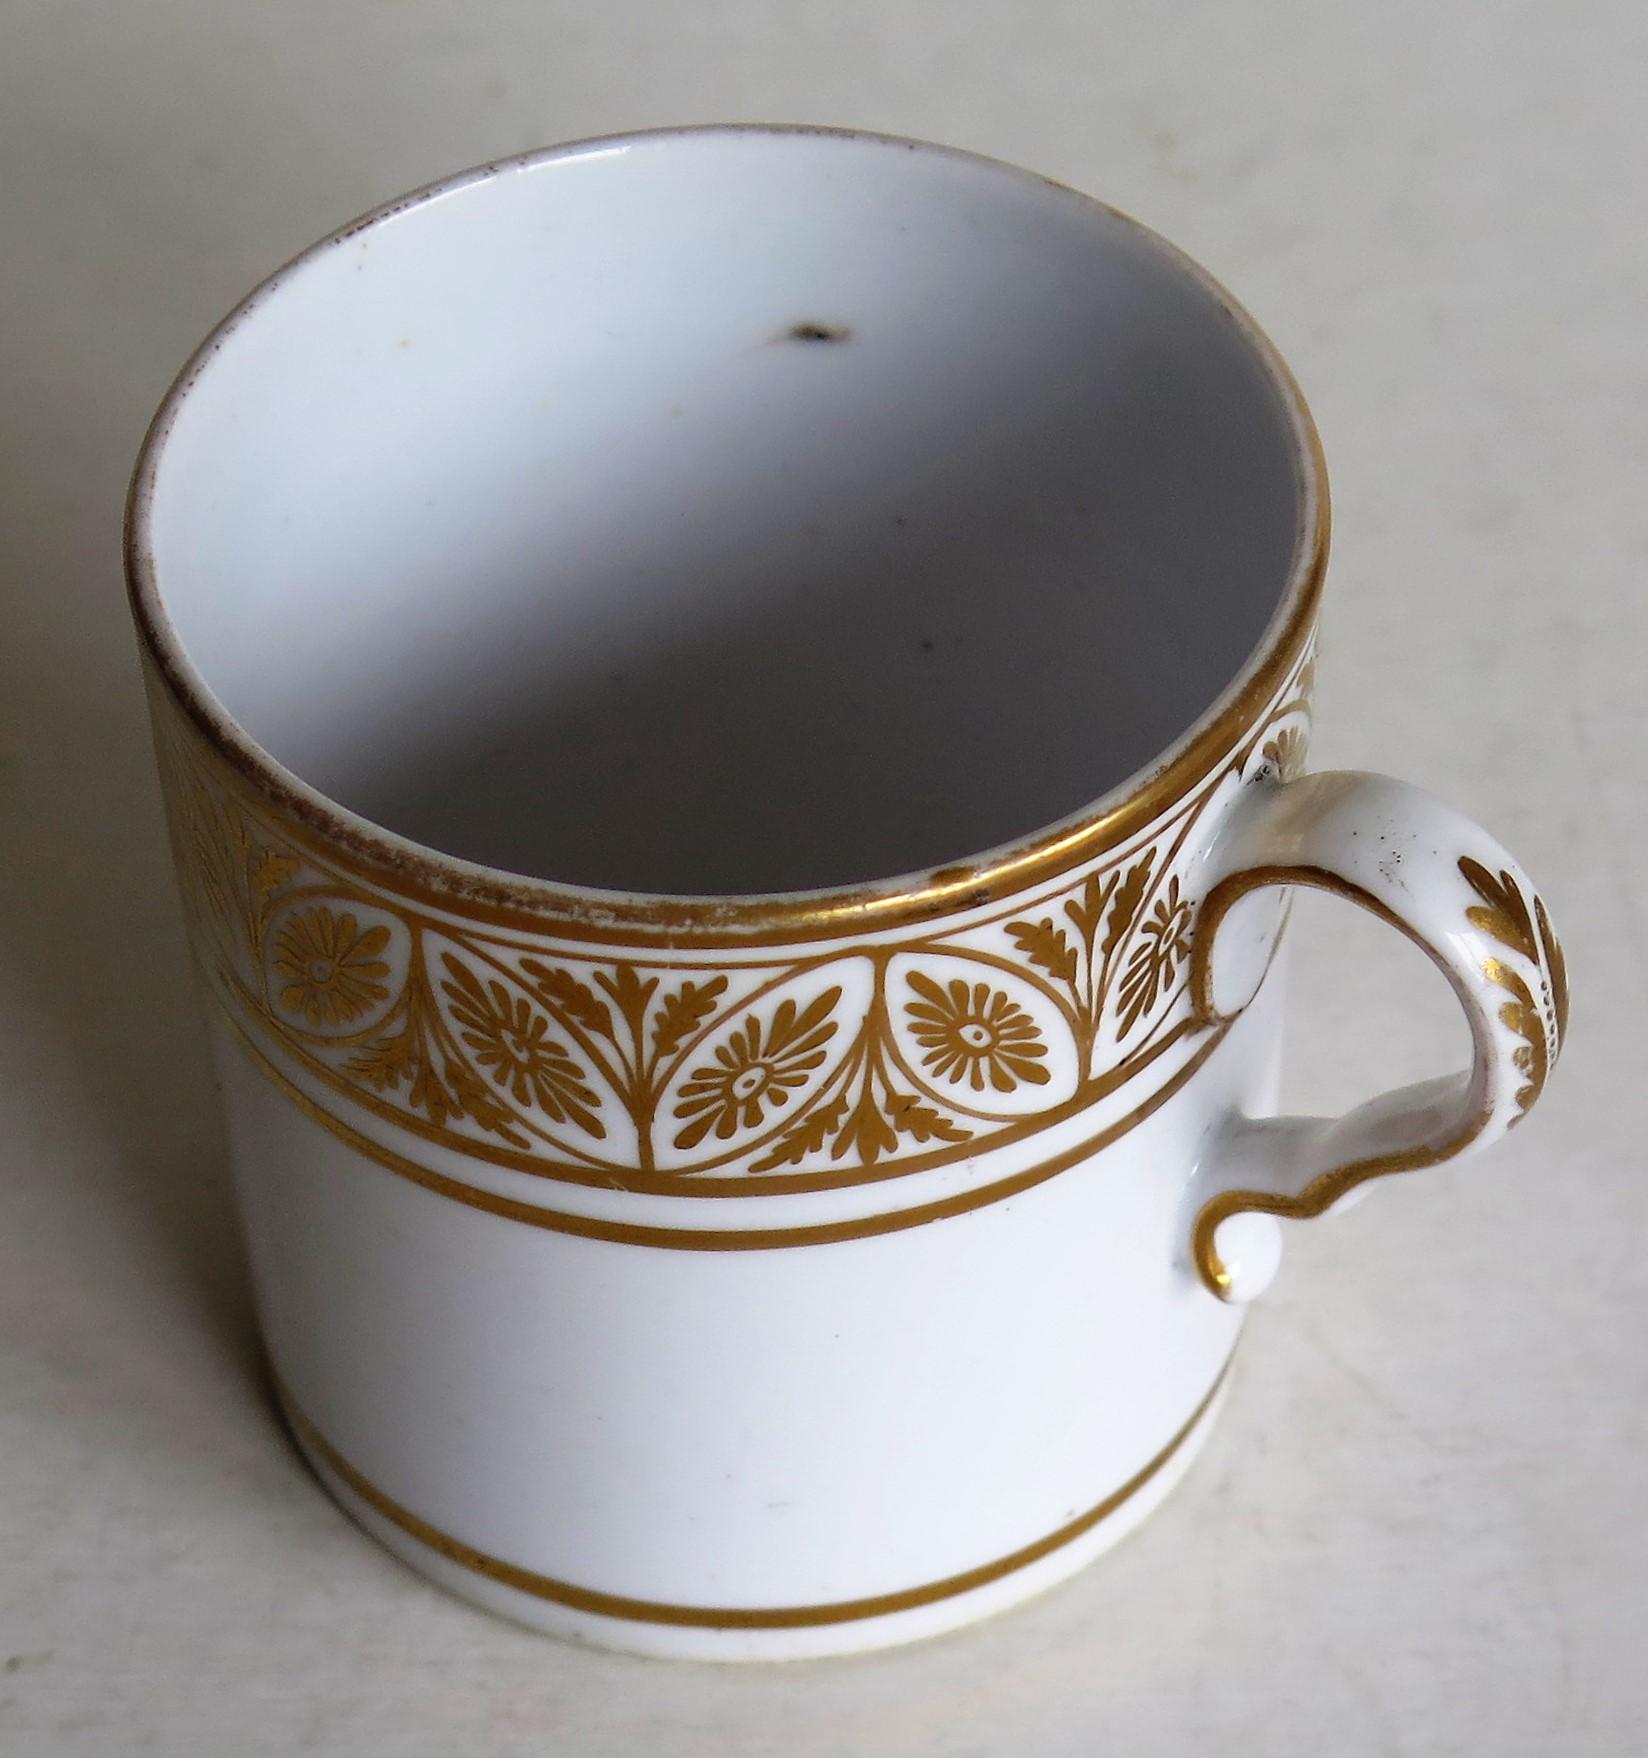 Dies ist ein gutes Beispiel für eine englische Kaffeekanne (Tasse) aus Porzellan aus der Zeit Georgs III., hergestellt von Spode im frühen 19. Jahrhundert, um 1810.

Die Can ist nominell gerade und hat den Spode-Loop-Griff mit einem ausgeprägten